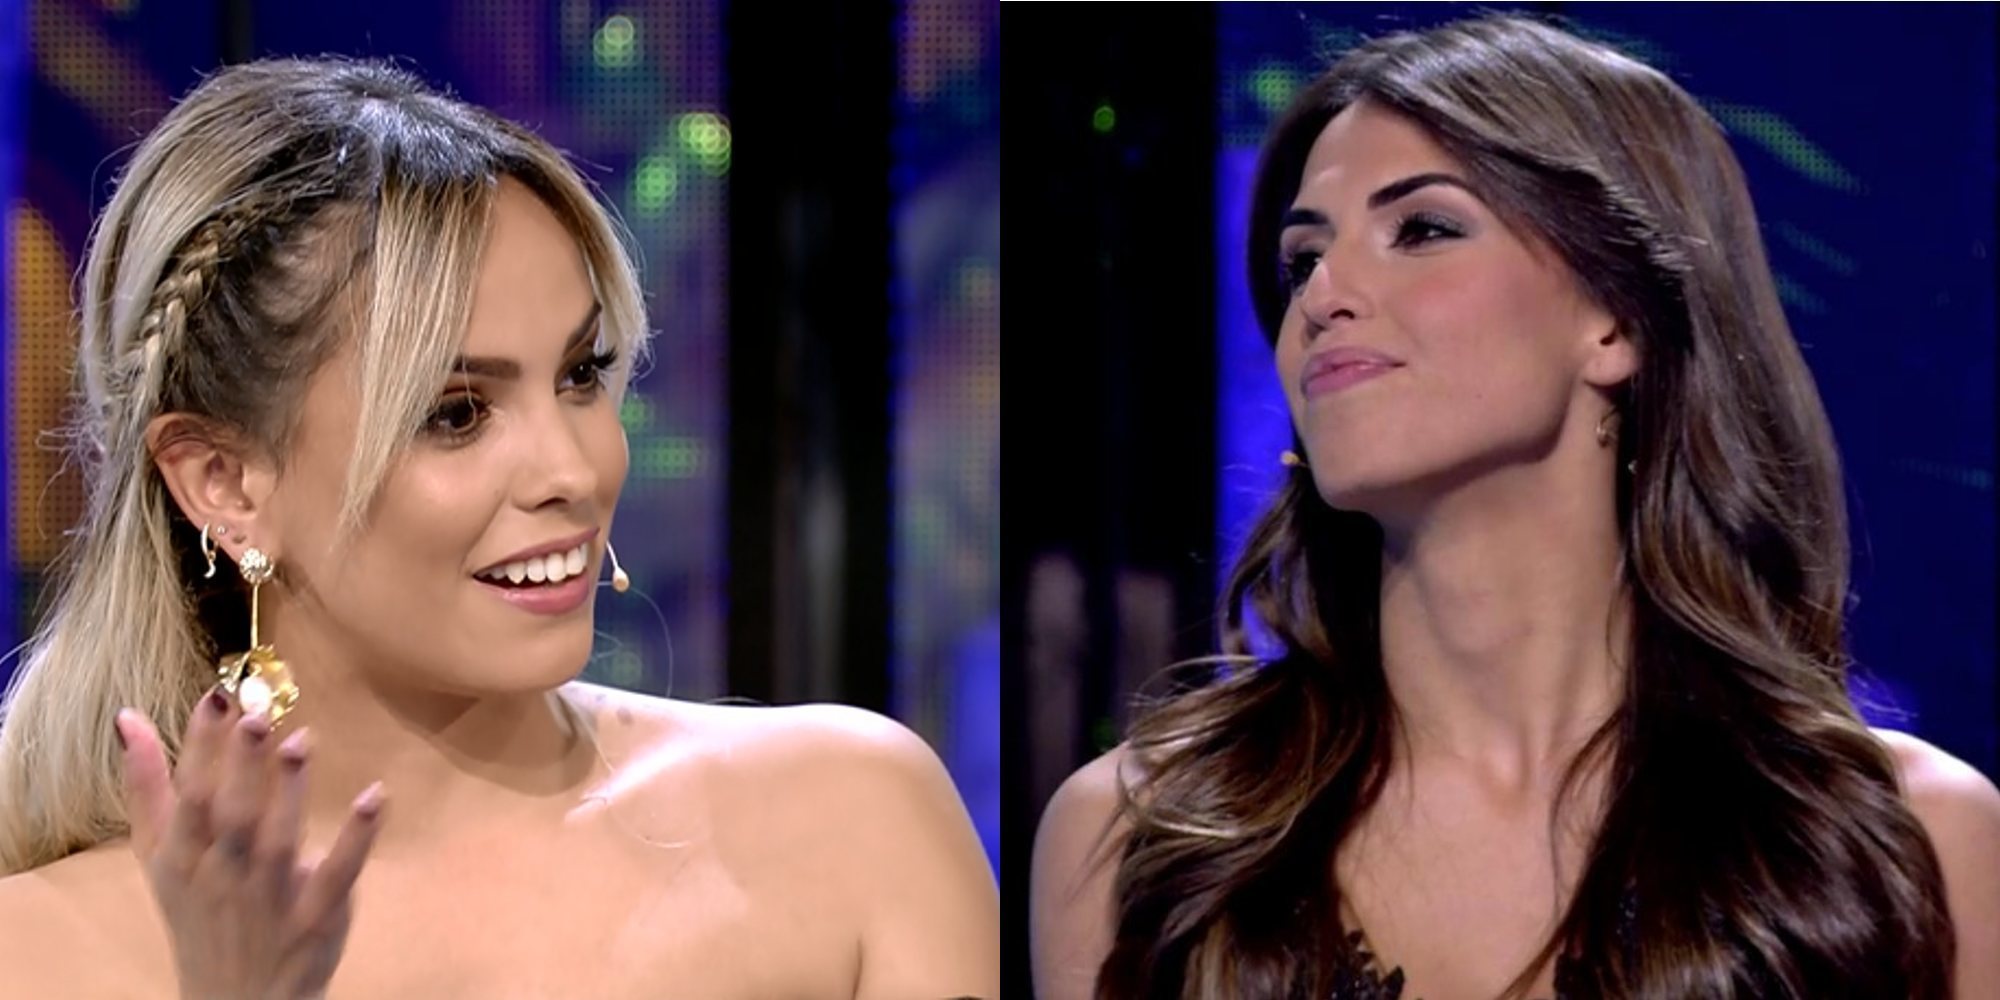 Gloria Camila y Sofía Suescun se ven las caras en el plató de 'Supervivientes 2020'